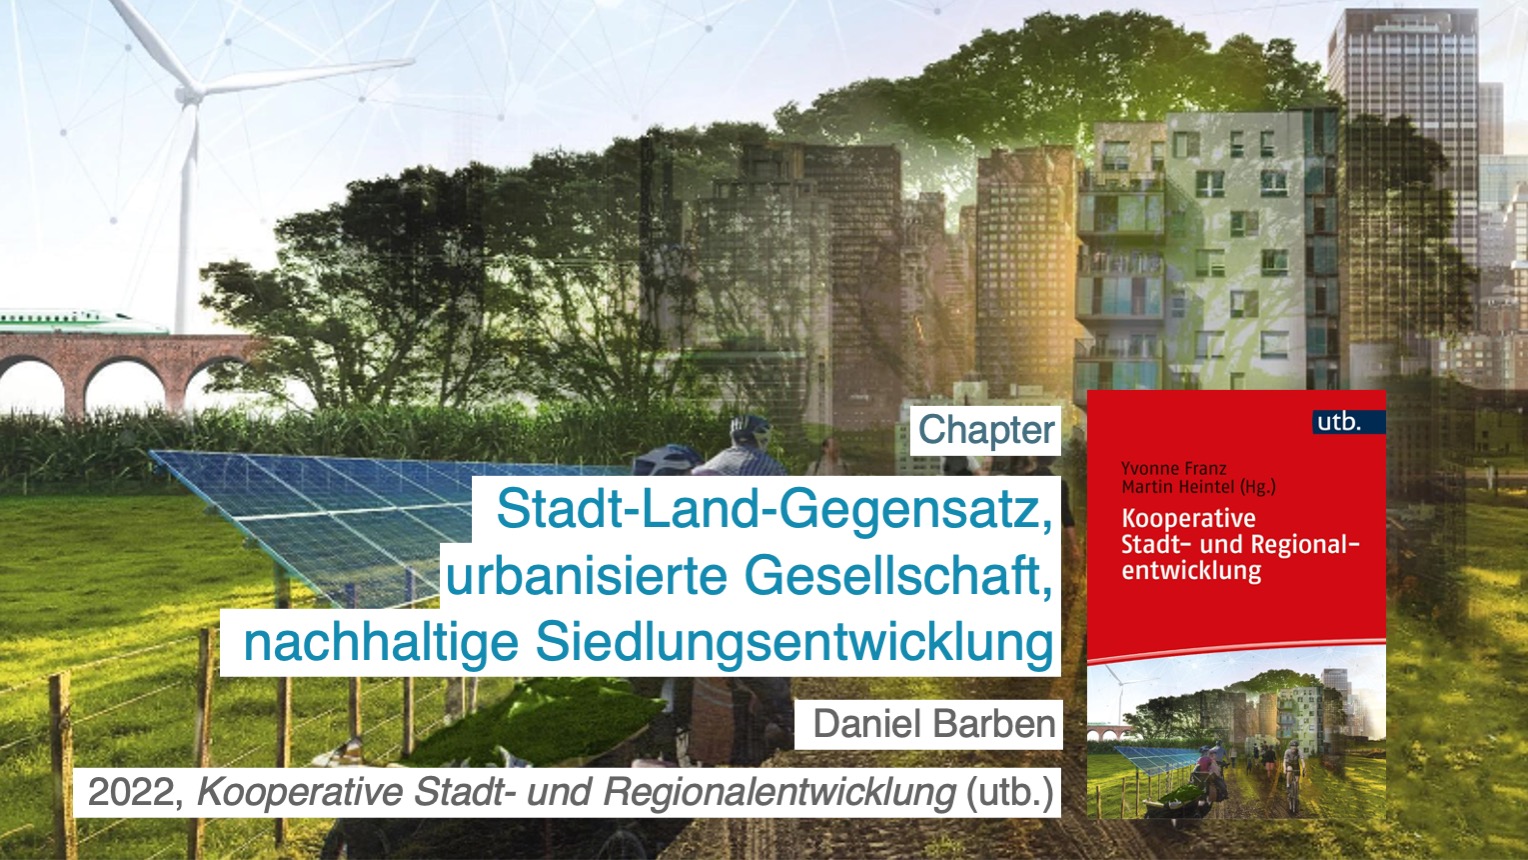 Daniel Barben: Stadt-Land-Gegensatz, urbanisierte Gesellschaft, nachhaltige Siedlungsentwicklung. 2022, kooperative Stadt- und Regionalentwicklung (utb.).